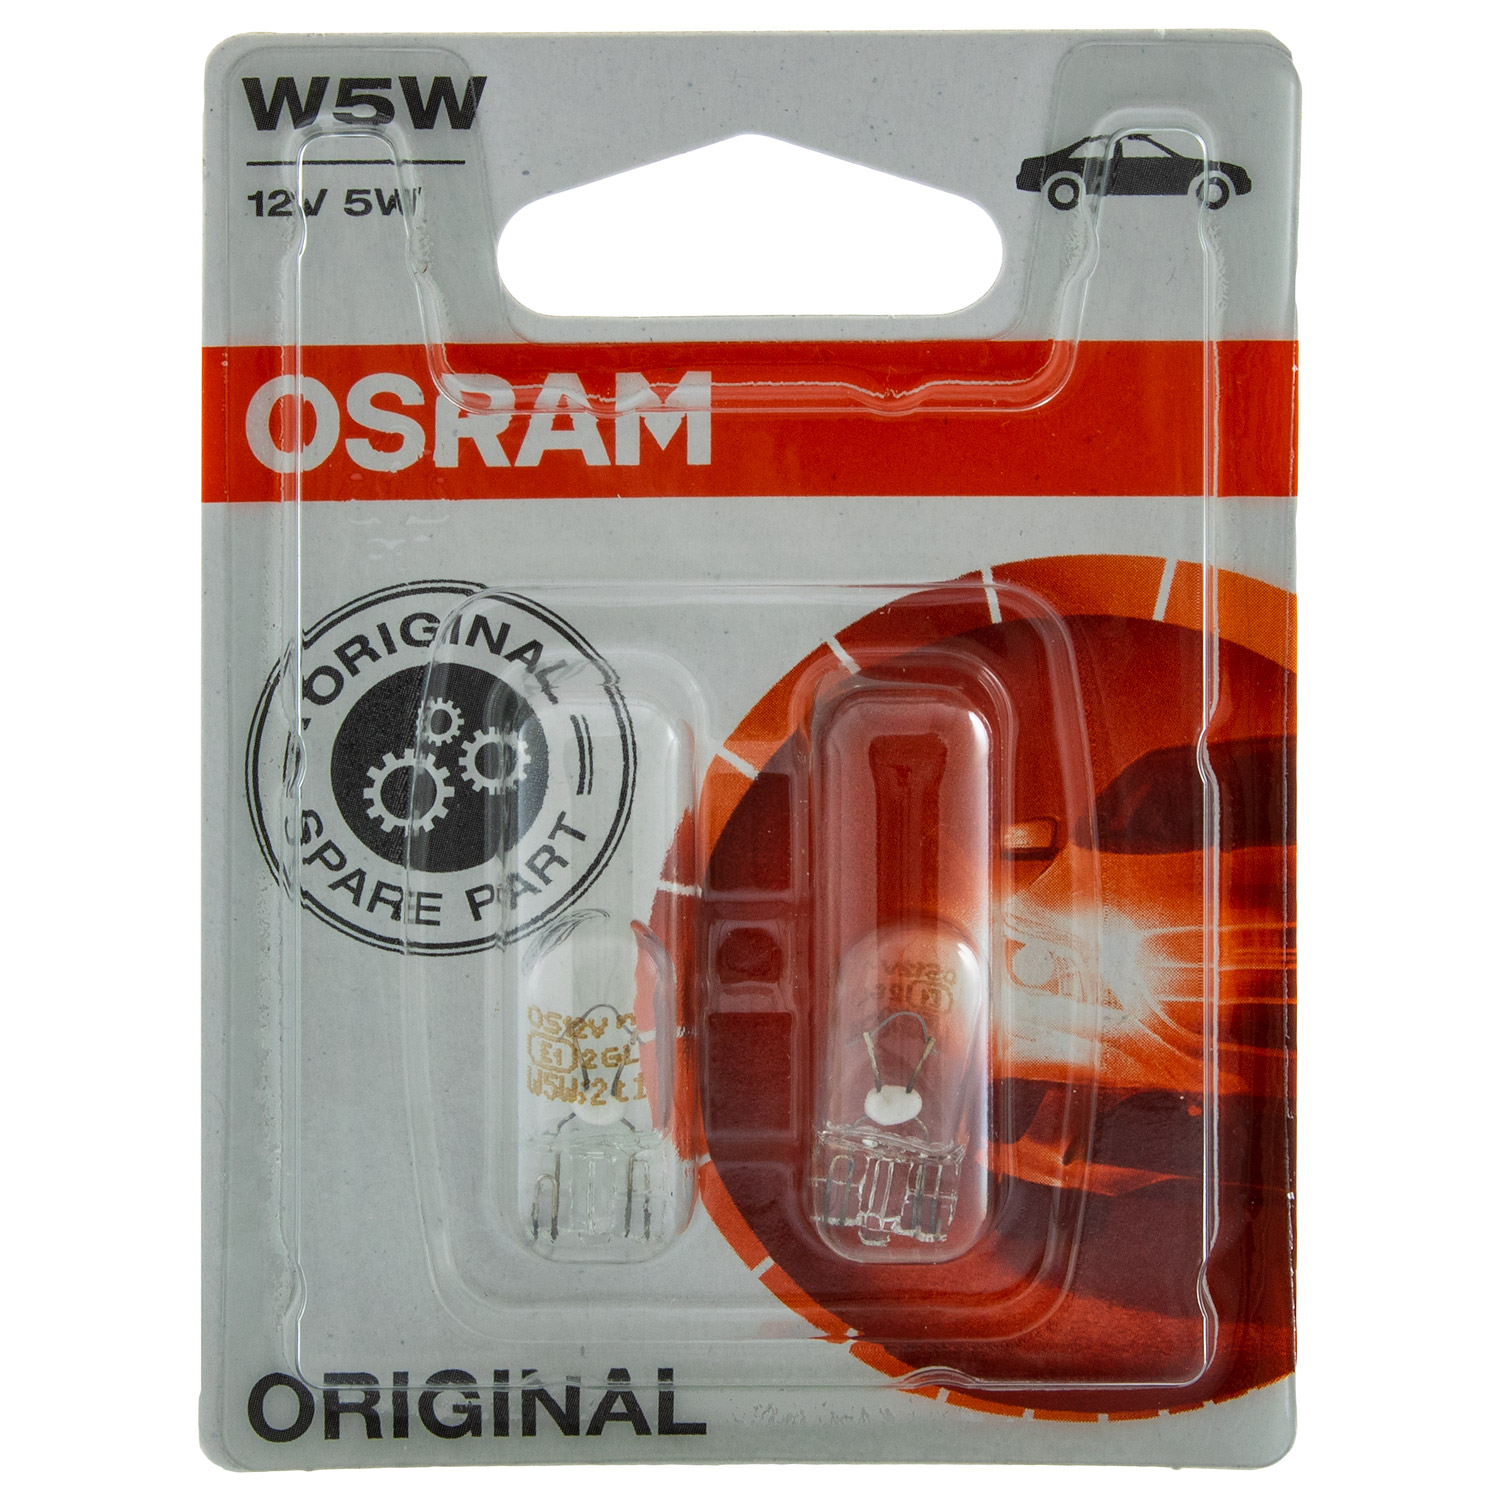 SET OSRAM Spare Part Blister 2x W5W 12V 5W W21x95d Lampe